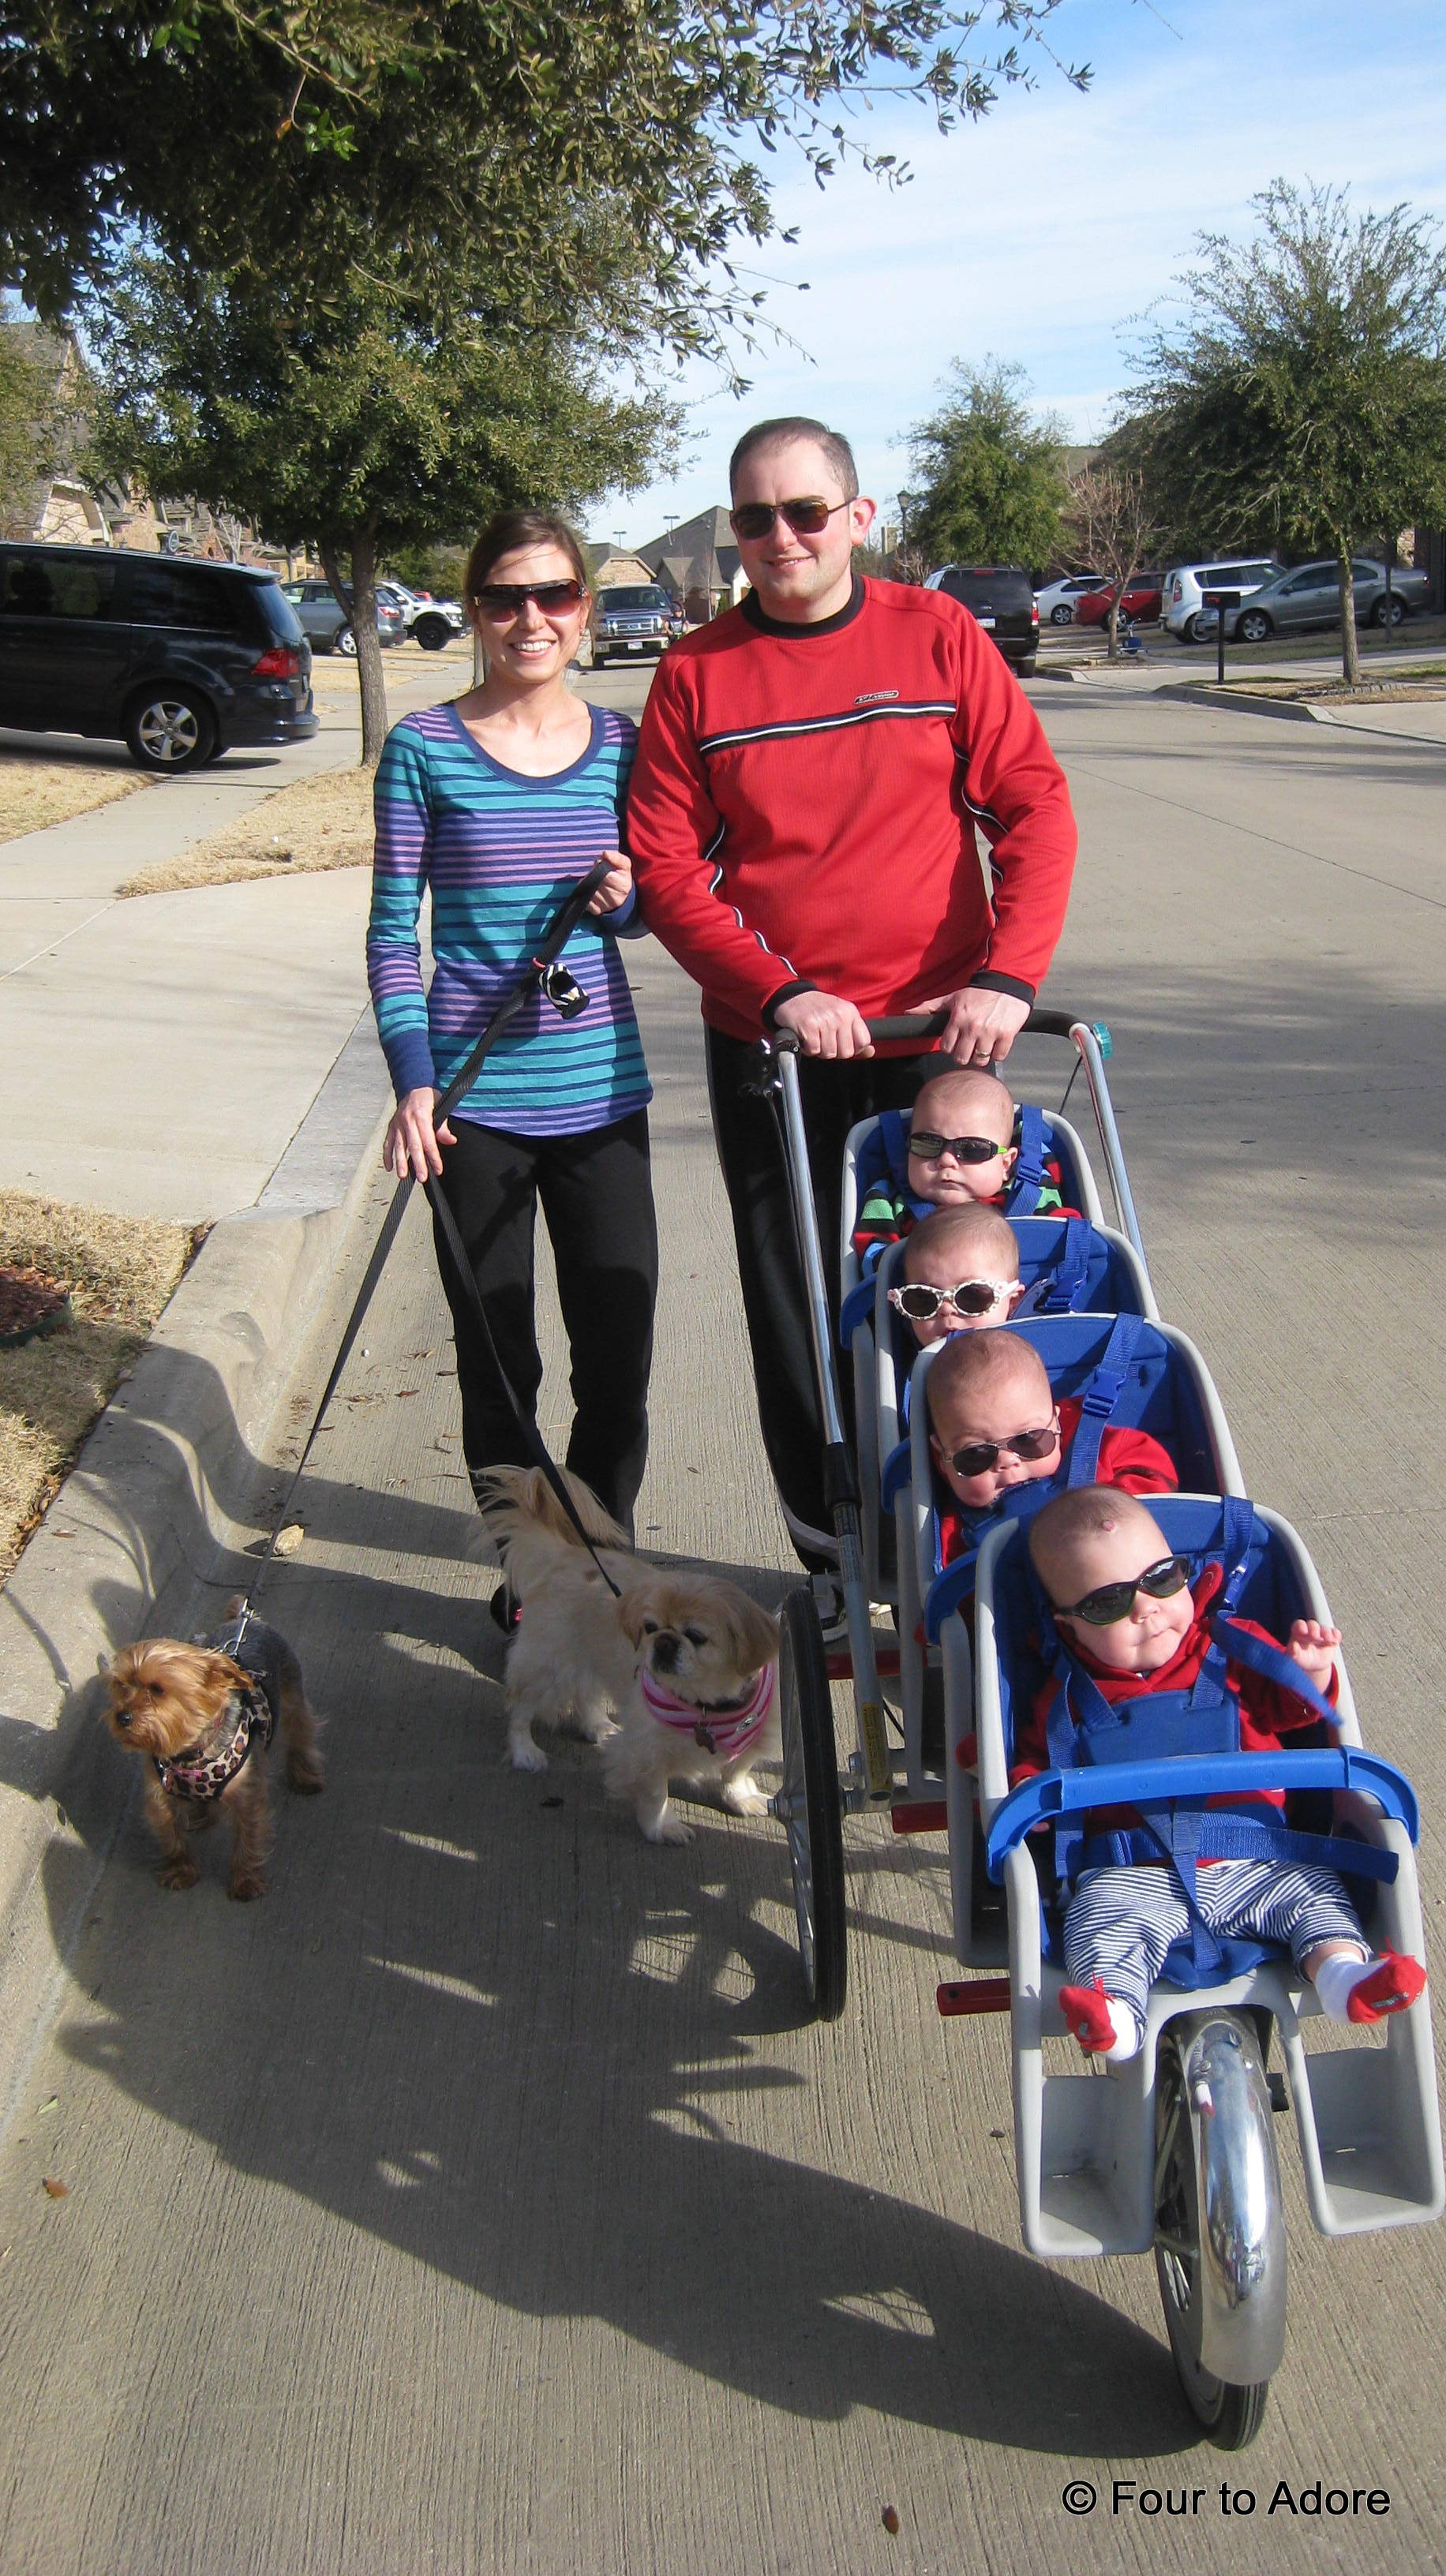 stroller for quadruplets